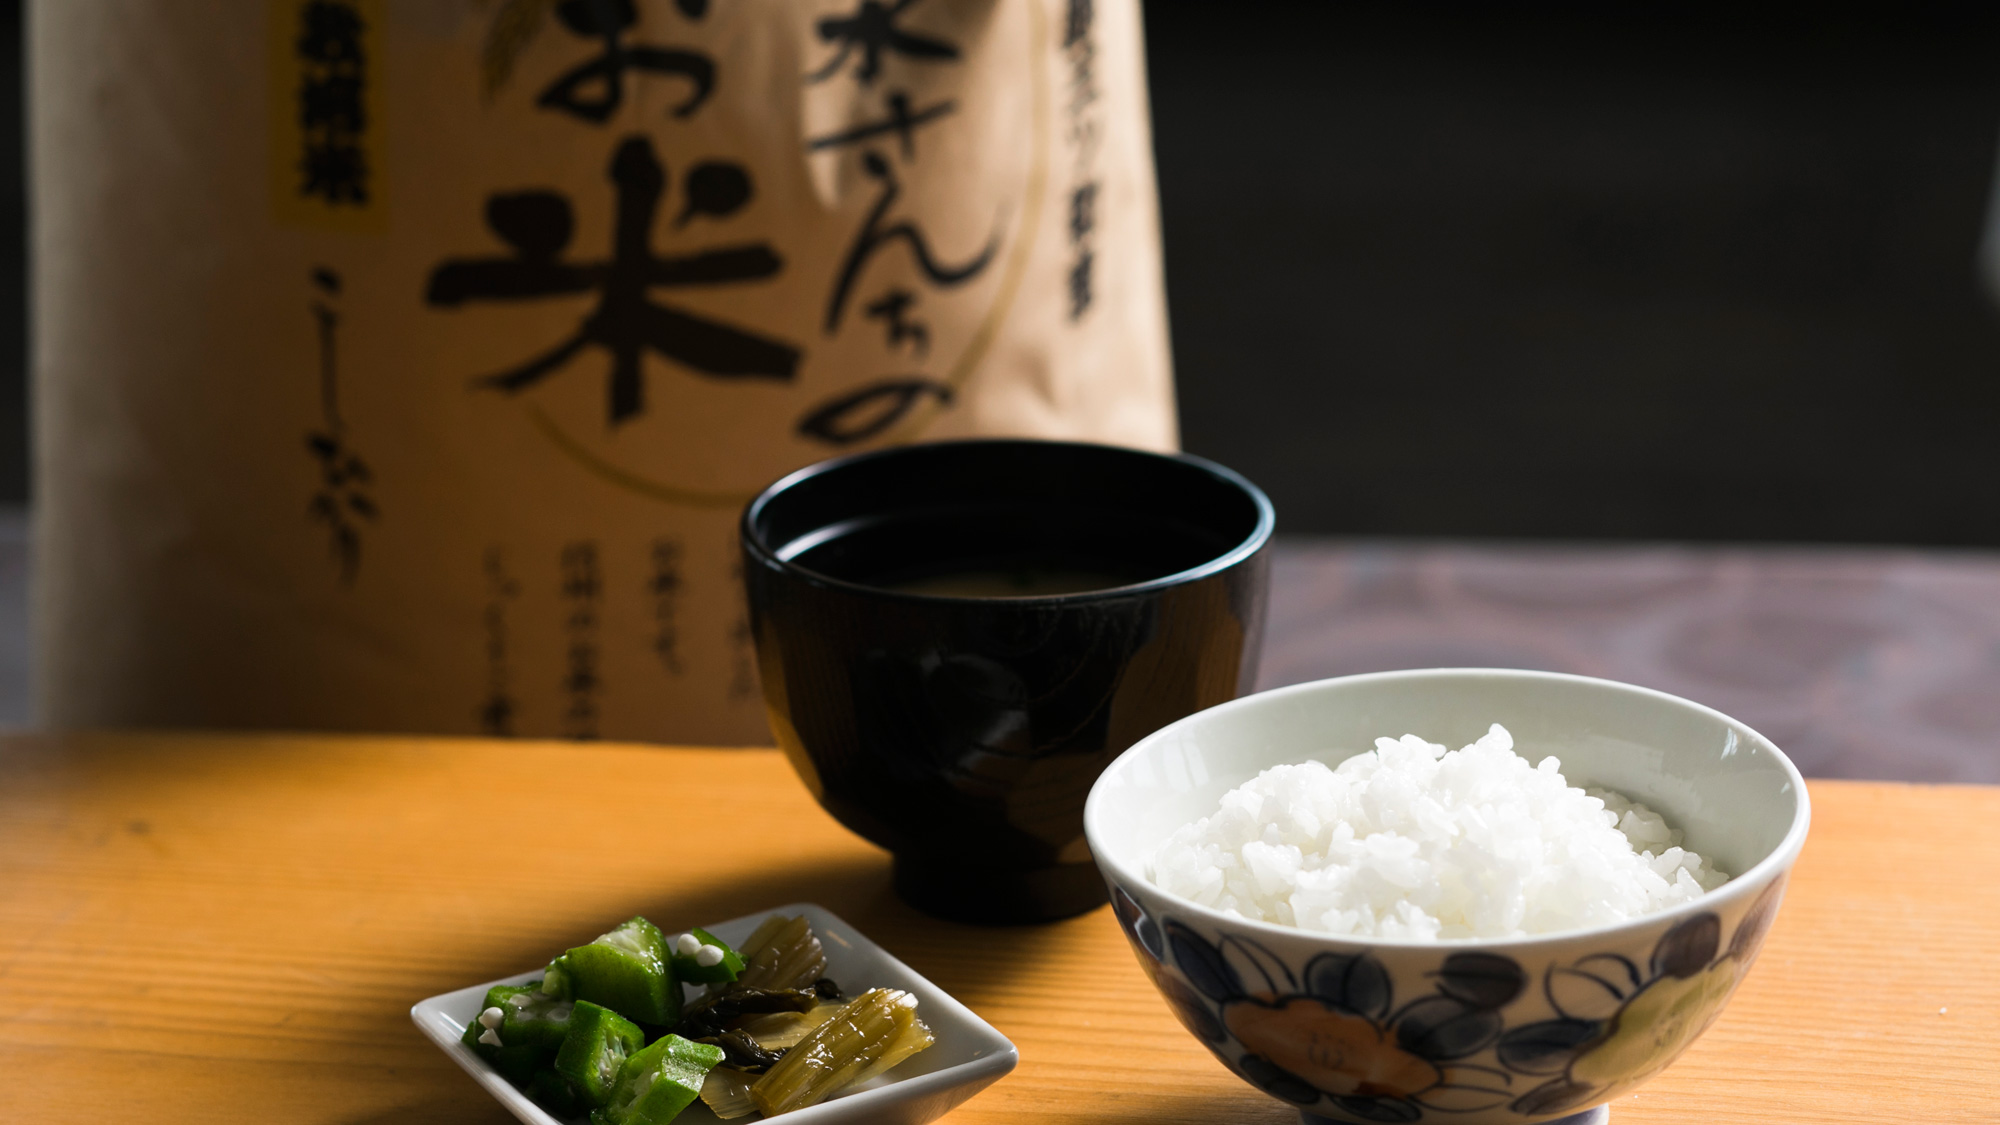 【清水さんちのお米】朝食ブッフェには、長野県中野市で栽培されているお米を使用しております。